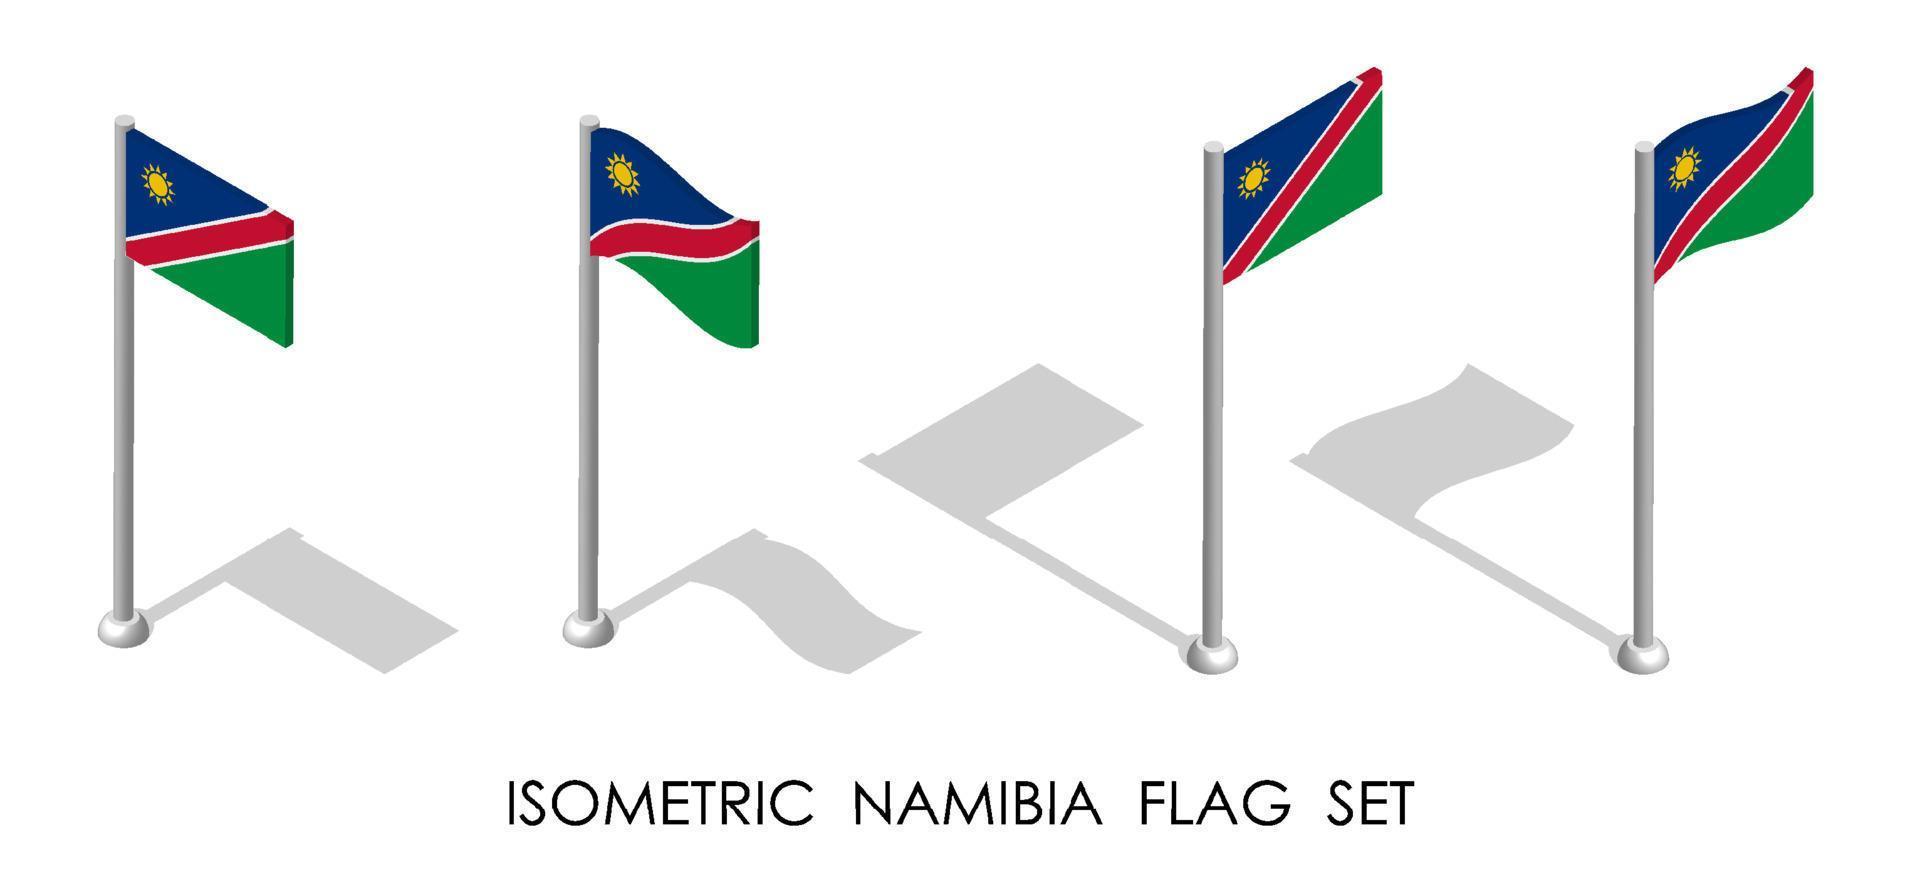 bandeira isométrica da Namíbia em posição estática e em movimento no mastro. Vetor 3d